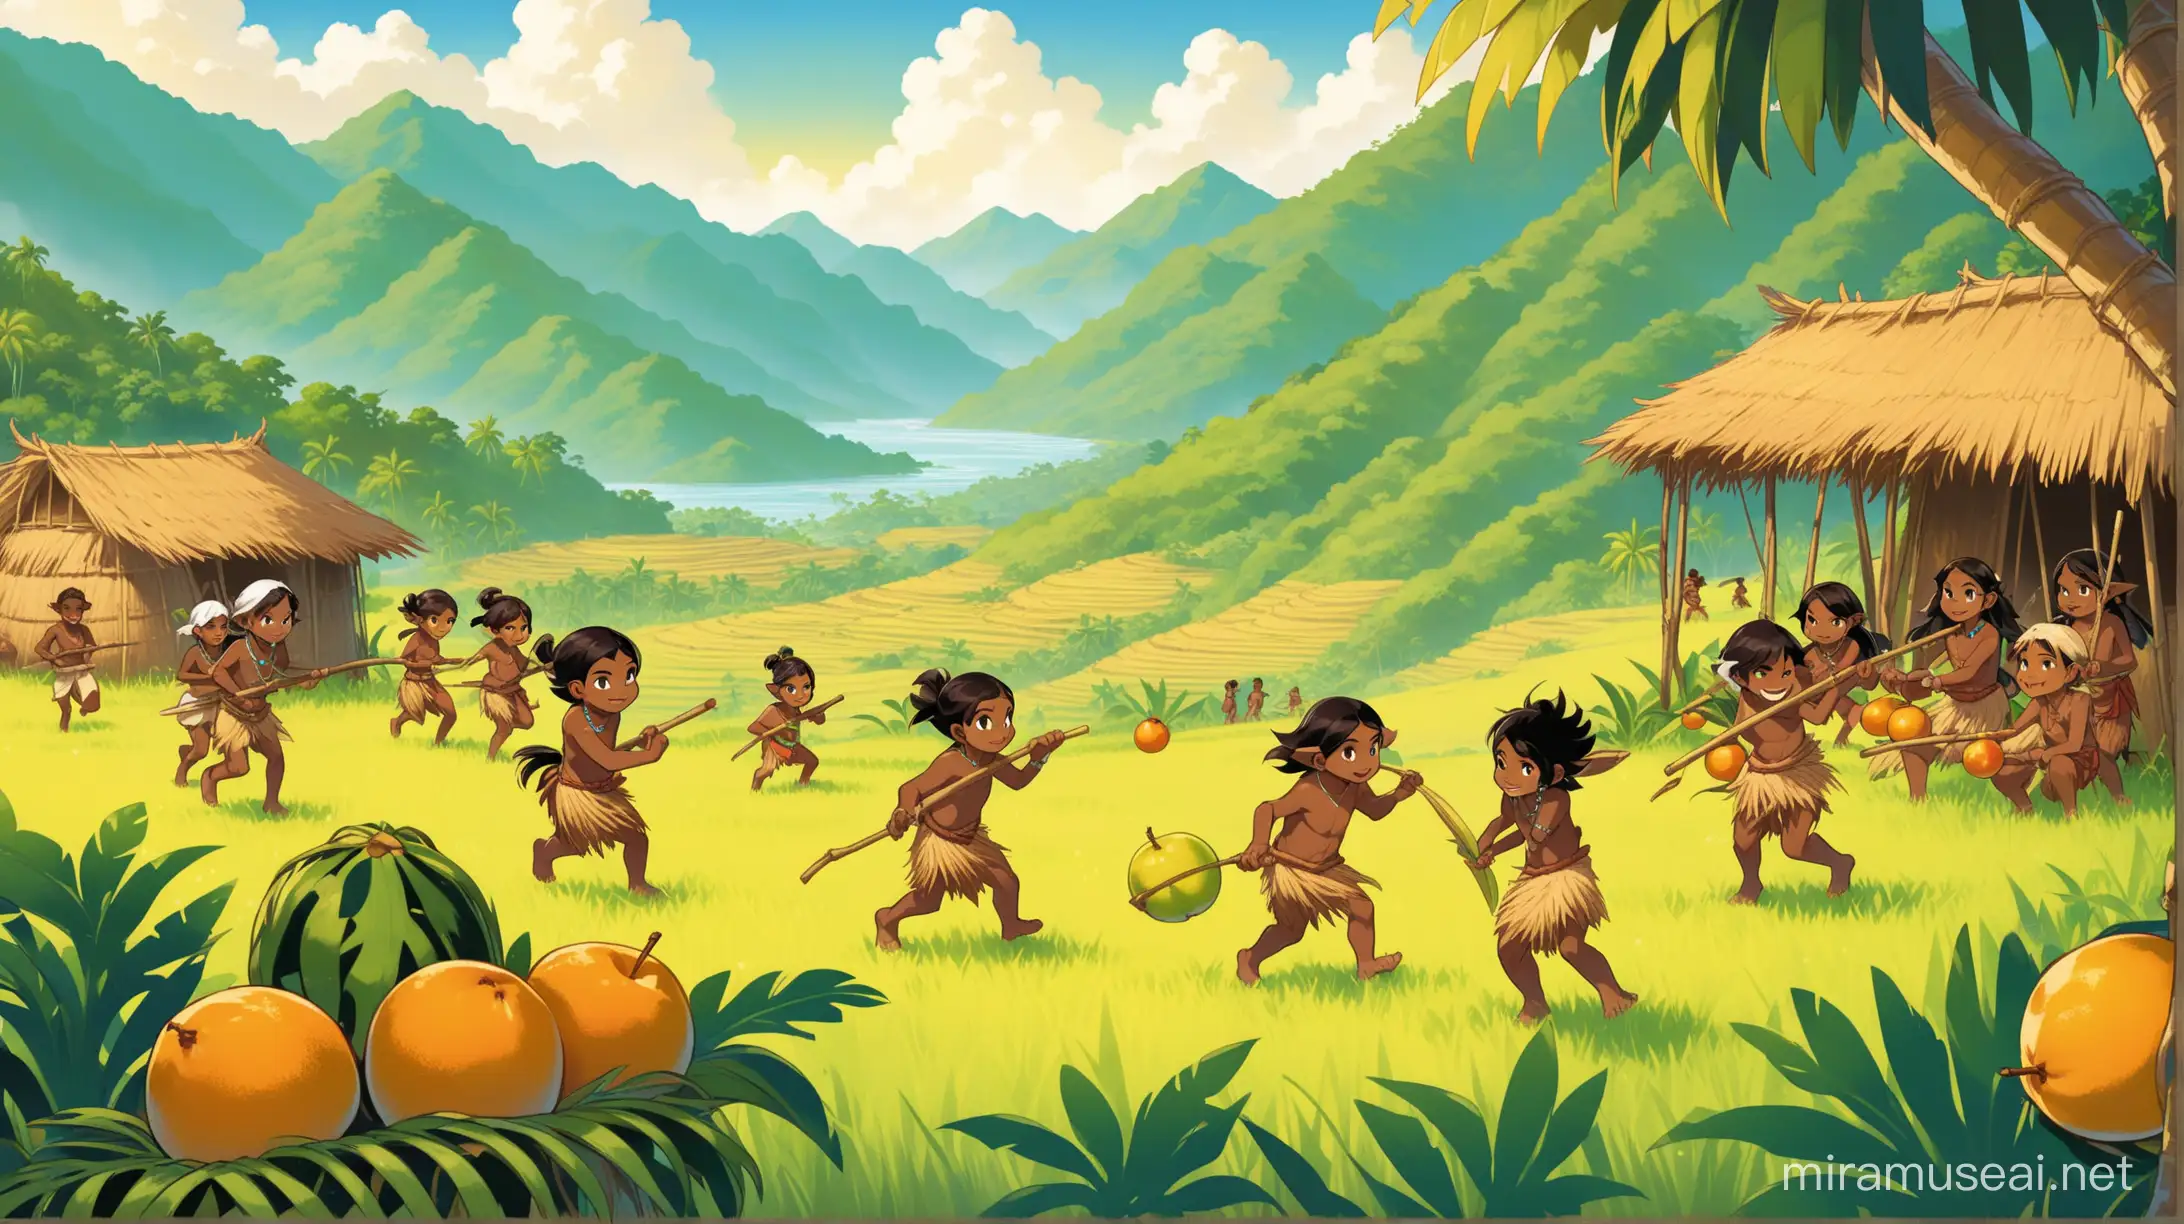 plan d'ensemble d'un peuple mélanésien dans leur tribu qui se trouve de la montagne. Ces personnages sont vêtu de tenu en paille et sont torse nu. Ils font divers activité random (des enfants jouent, des adultes chasses, des femmes cueille des fruits et d'autre vont au champ). Ce peuple vie dans les montagnes calédoniennes (dans le pacifique). L'illustration est de style wakfu.